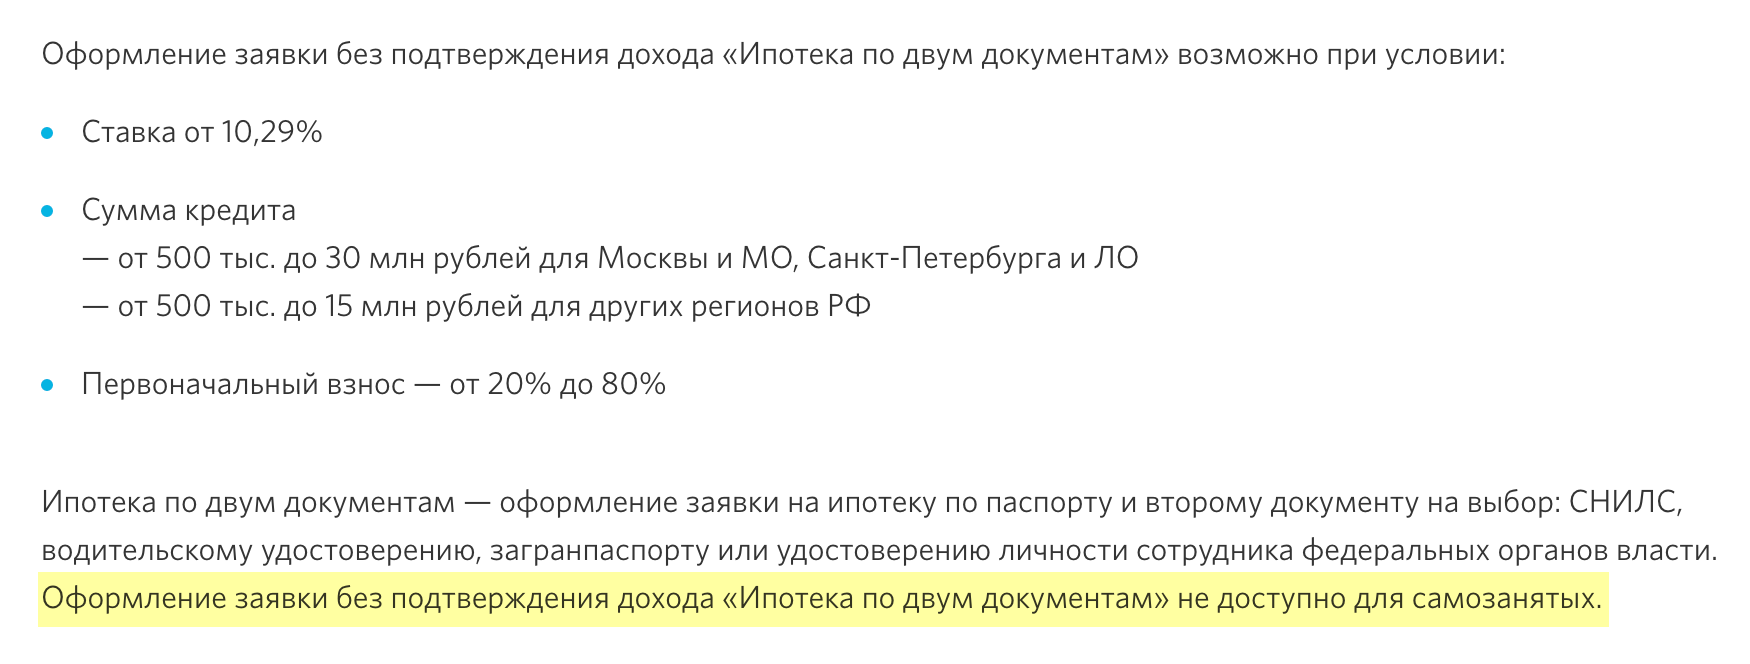 Банк «Открытие» в условиях «ипотека по паспорту» отмечает, что на самозанятых эта программа не распространяется. Источник: open.ru